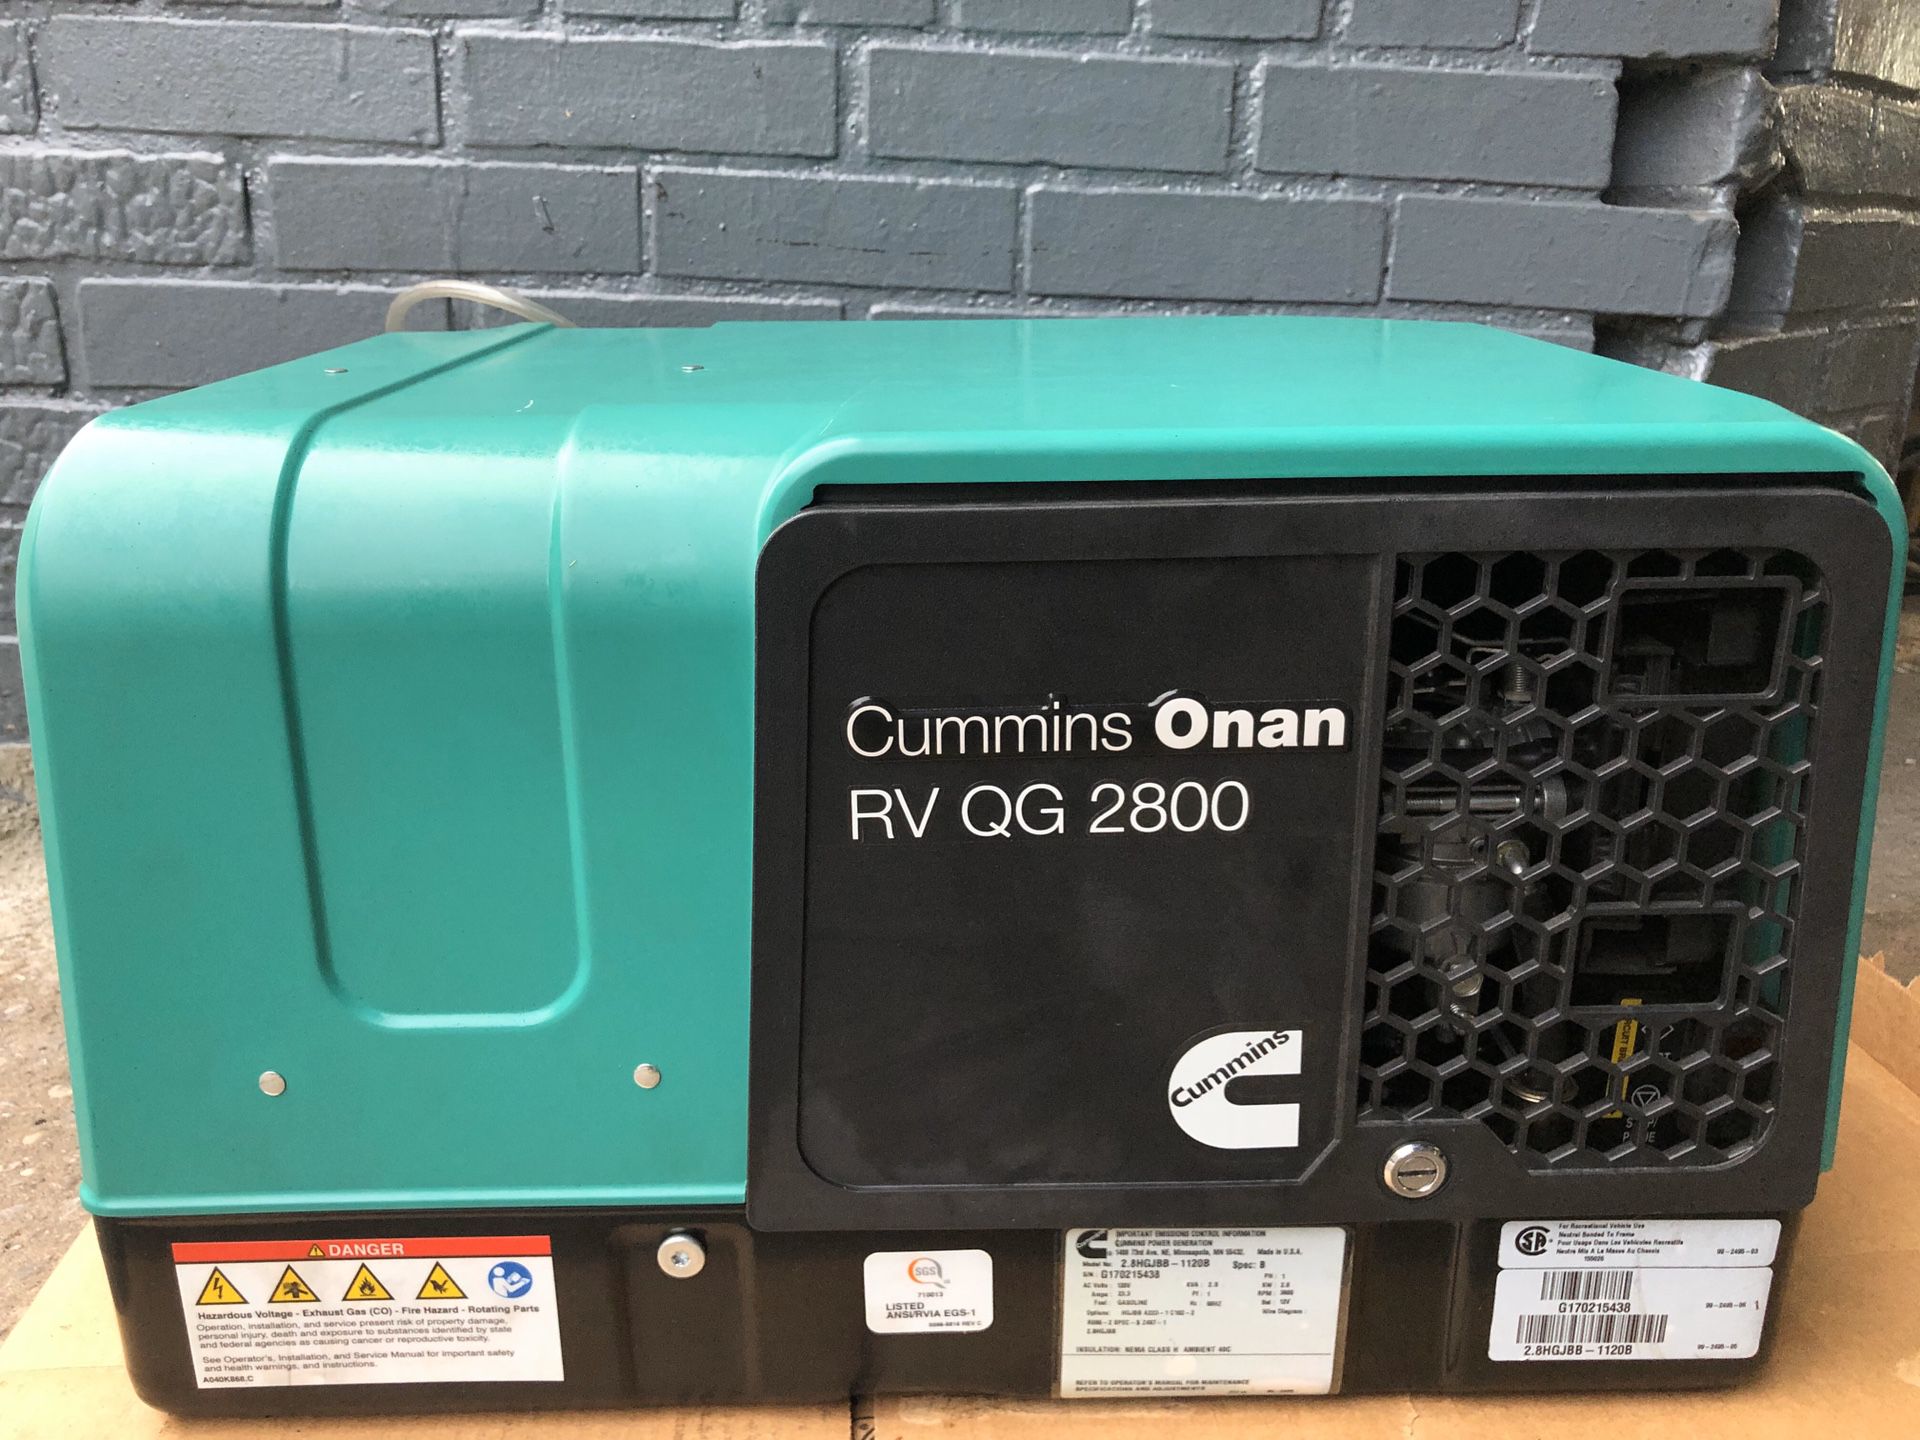 Cummins Onan RV QG 2800